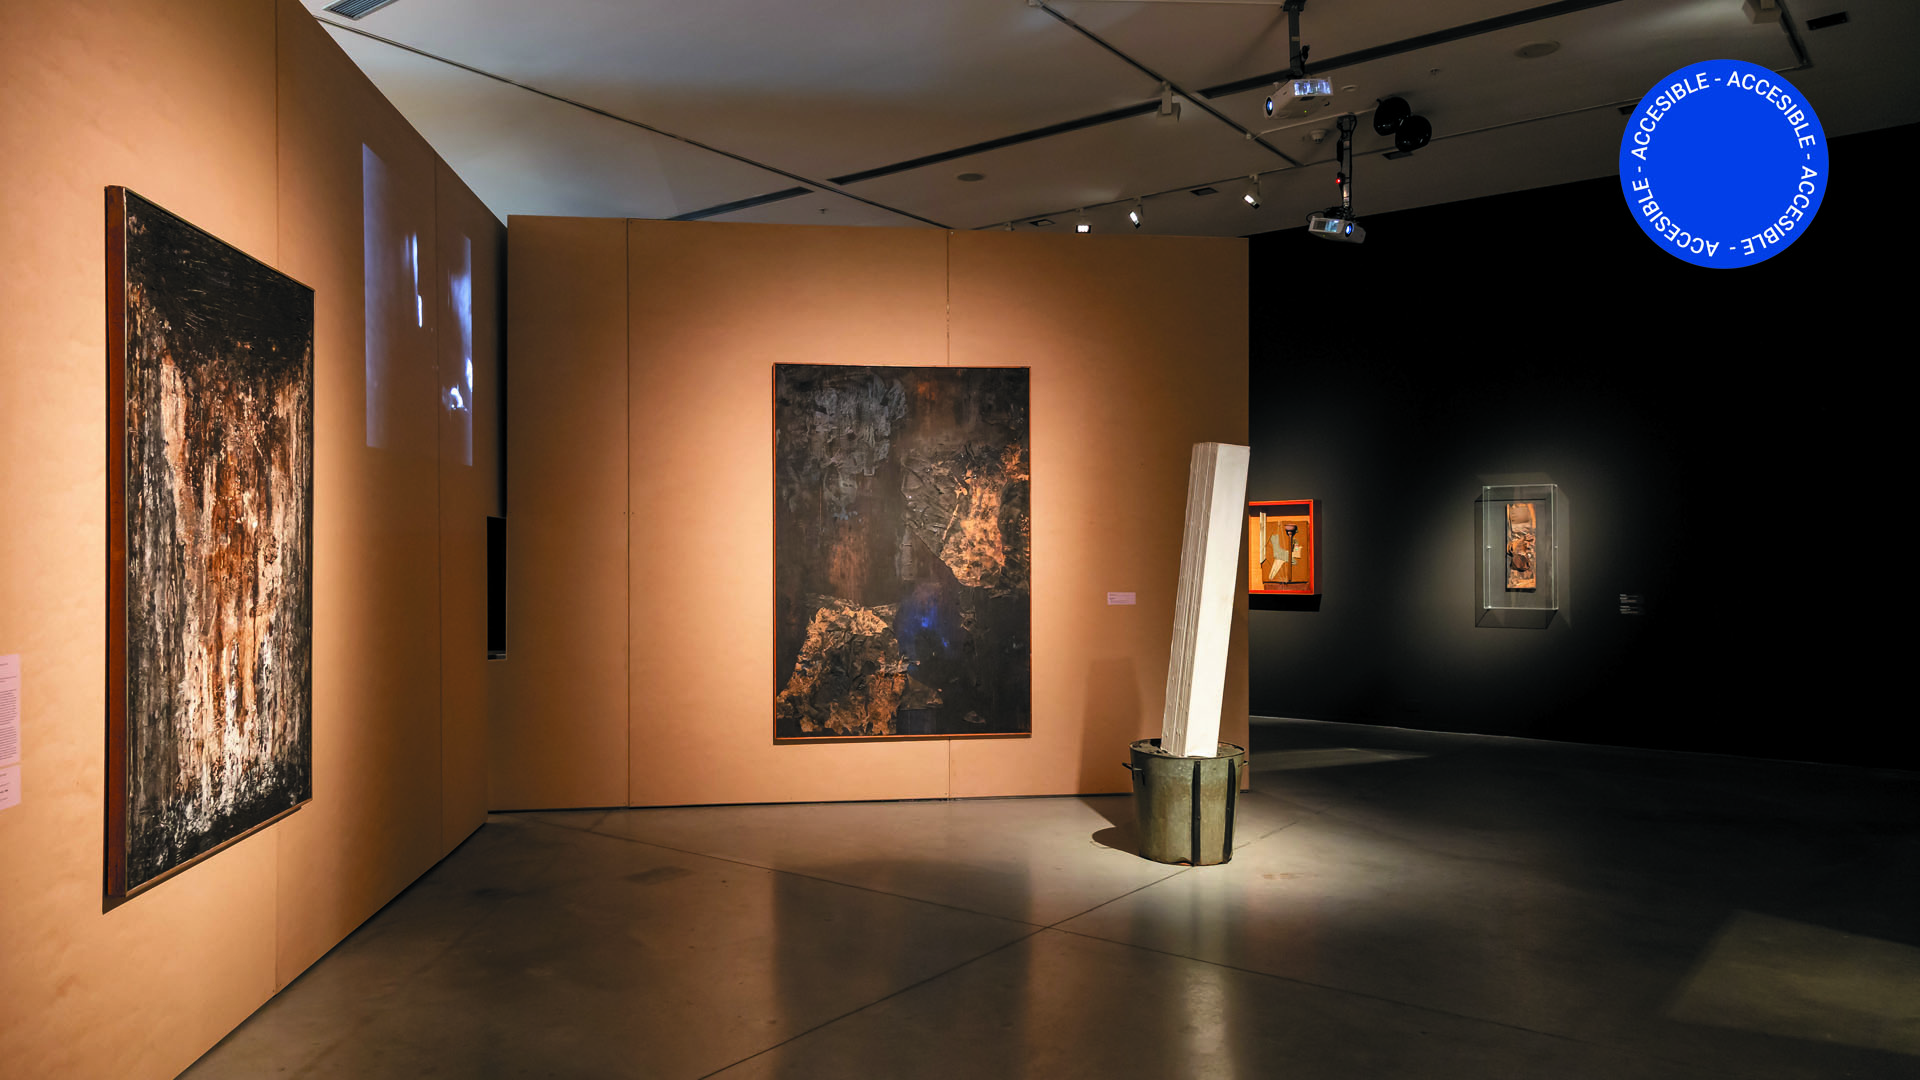 La imagen muestra una foto de la sala en donde se ven grandes cuadros colgados sobre paneles en tonos oscuros y con iluminación tenue.